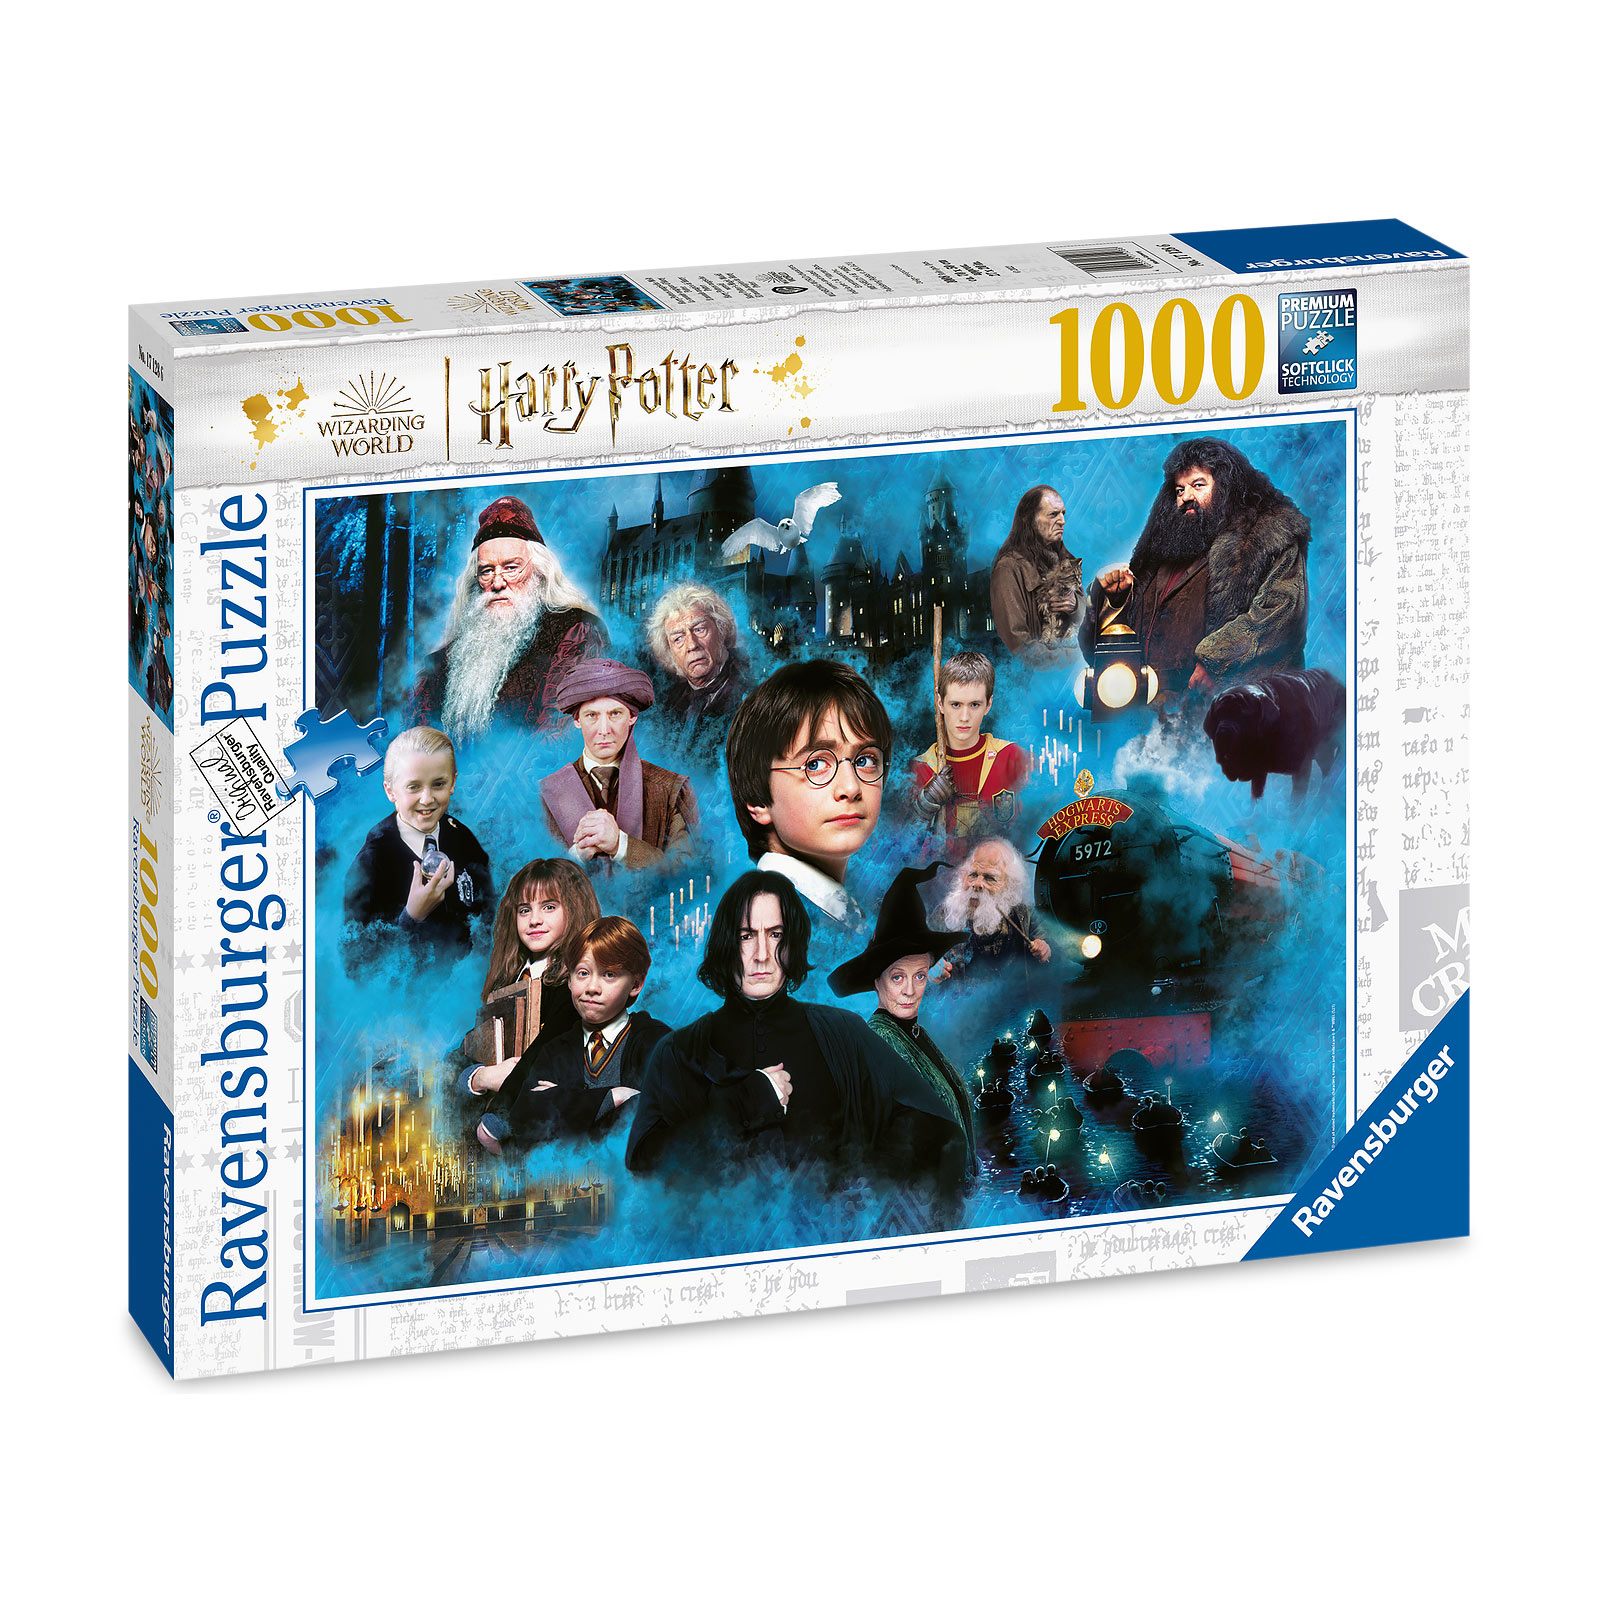 Harry Potters magische wereld - Puzzel 1000 stukjes